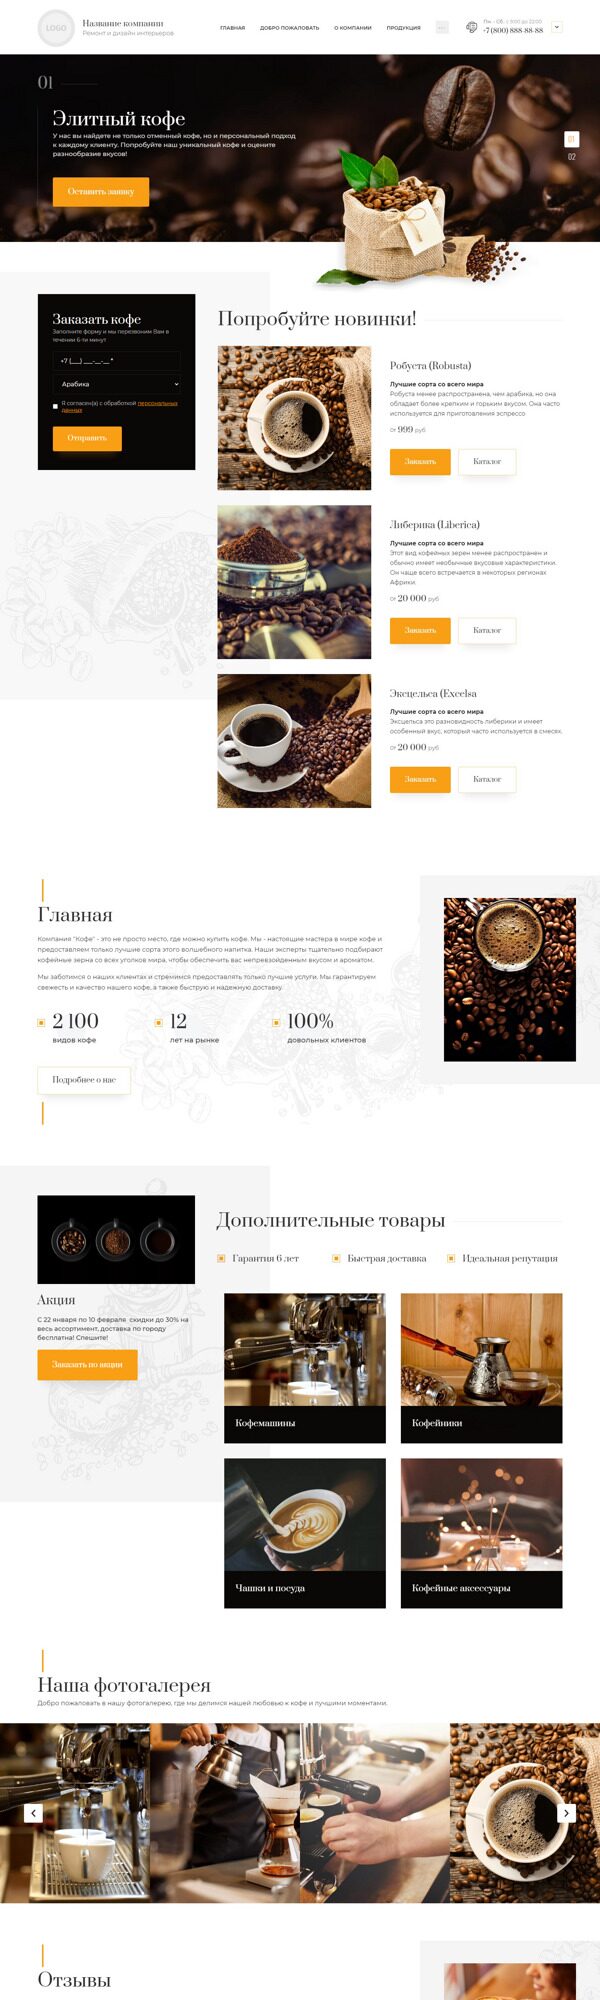 Готовый Сайт-Бизнес № 5276175 - Поставка кофе, кофе (Десктопная версия)